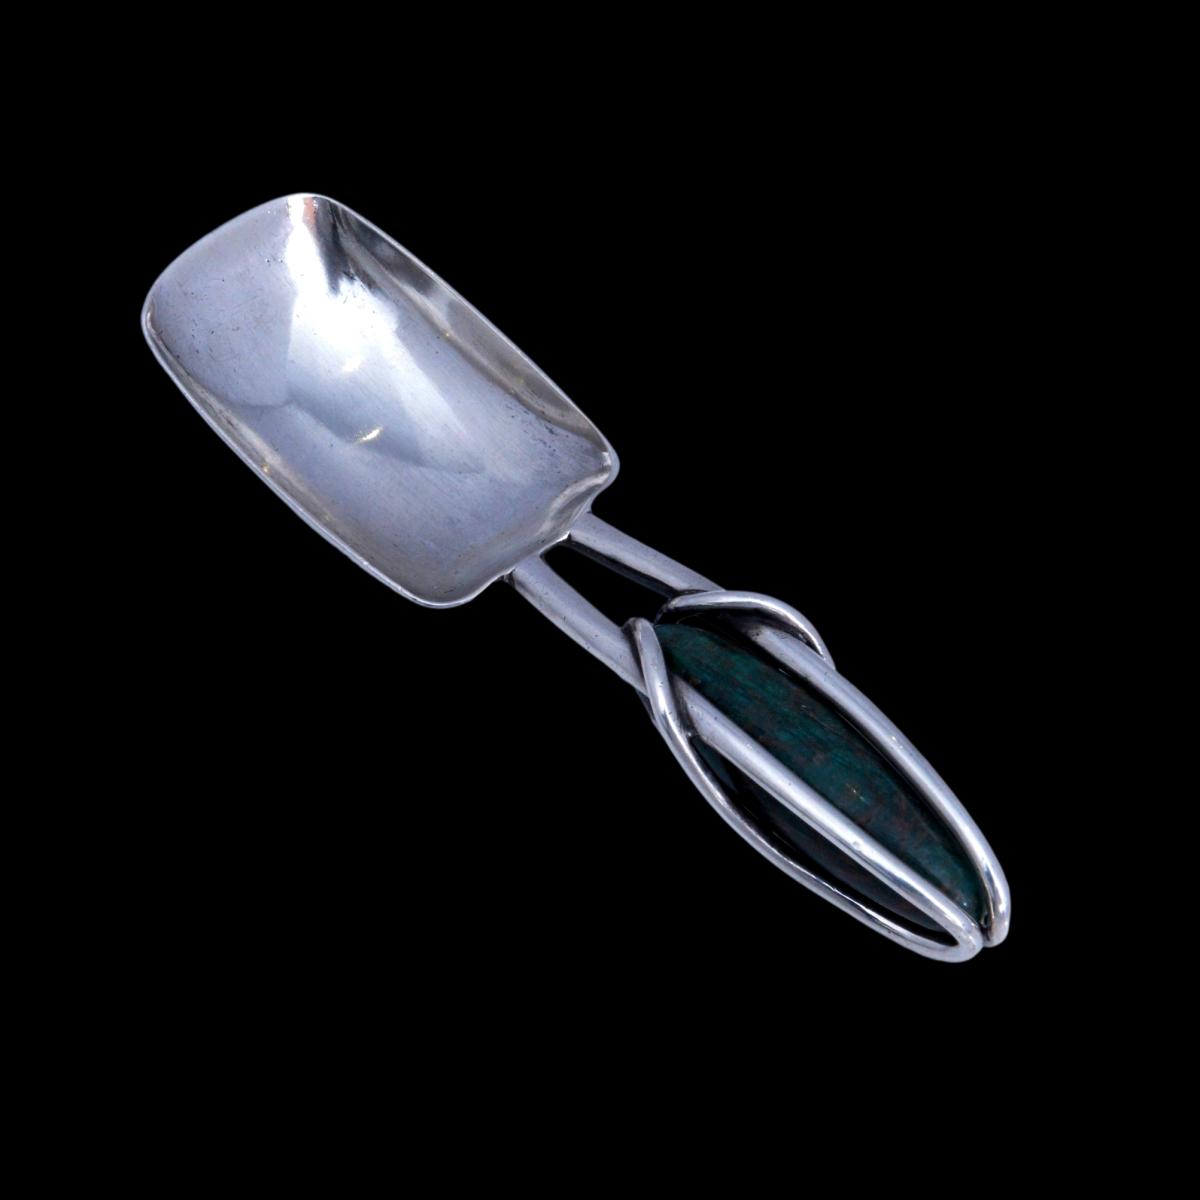 Archibald Knox silver caddy spoon